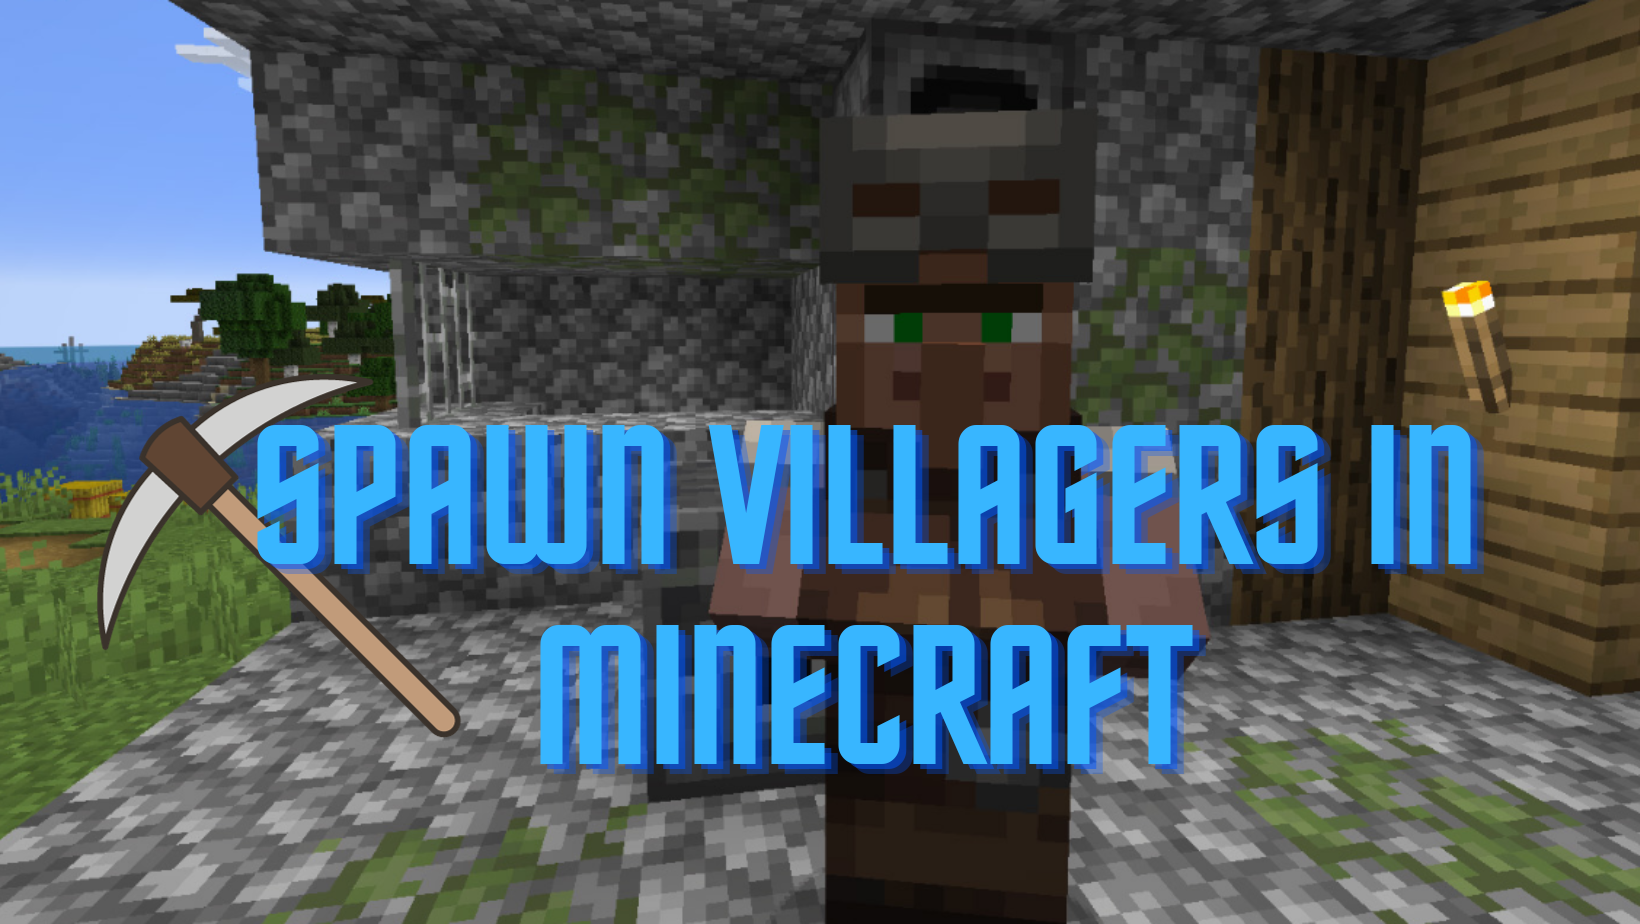 spawn villagers in minecraft